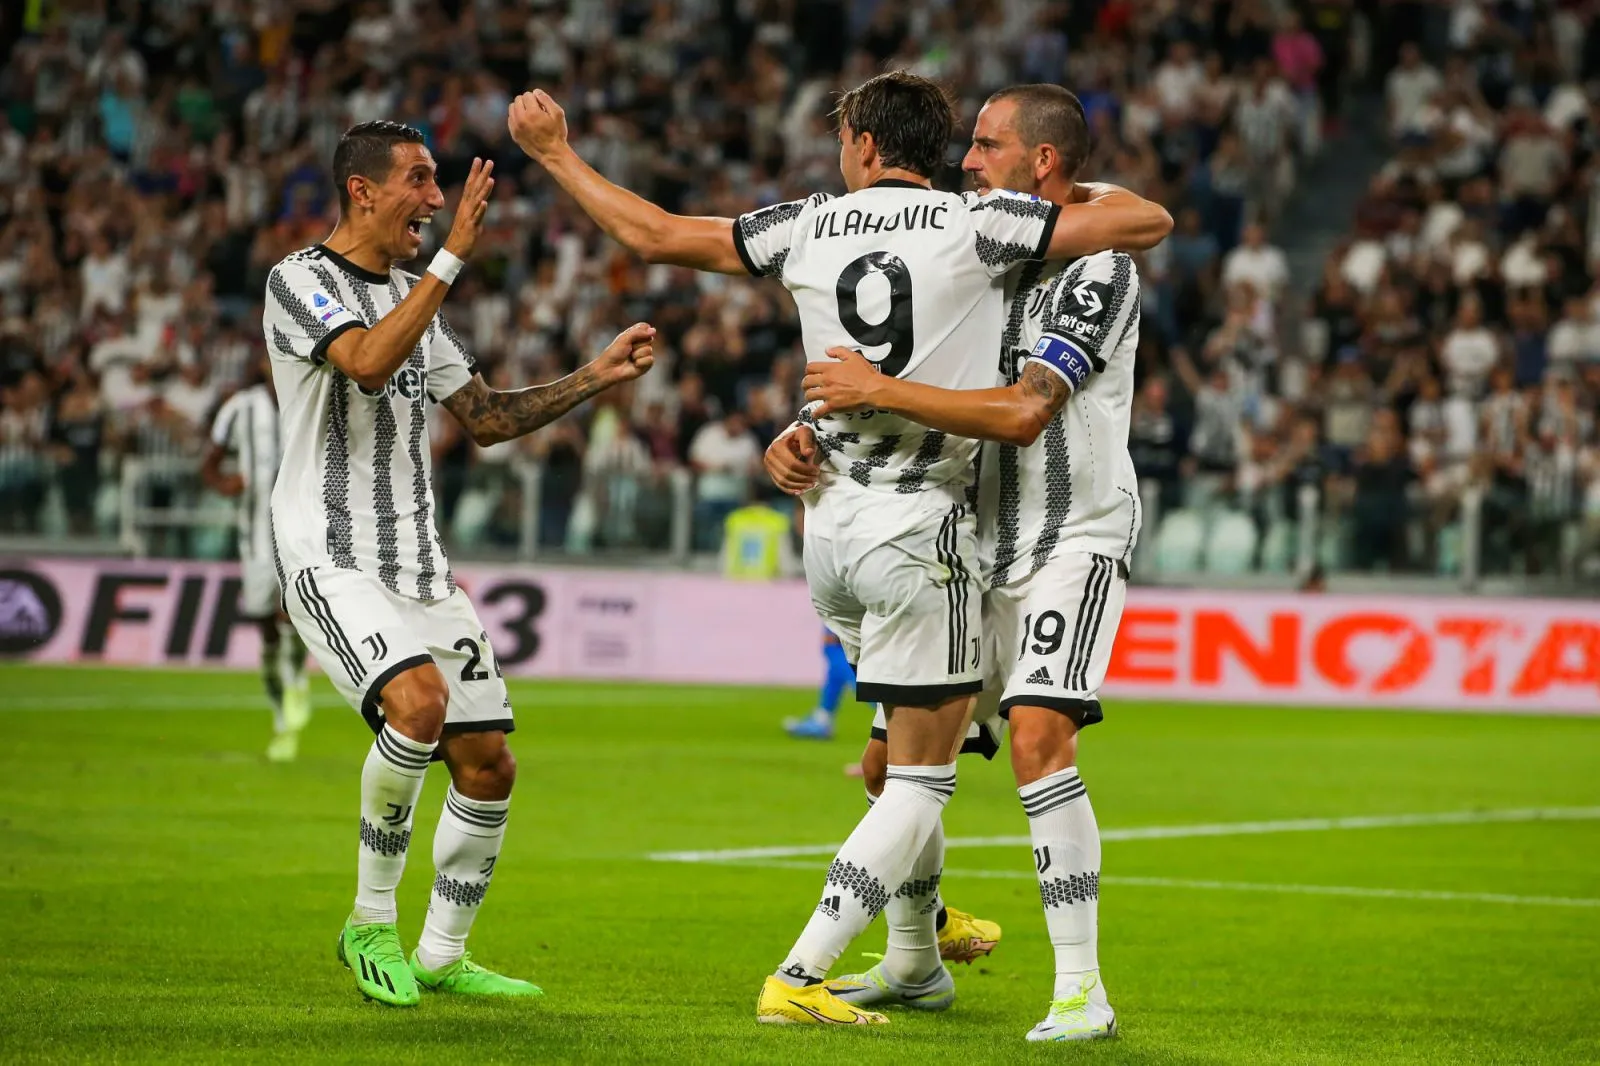 Pronostic Nantes Juventus : Analyse, cotes et prono du match de Ligue Europa